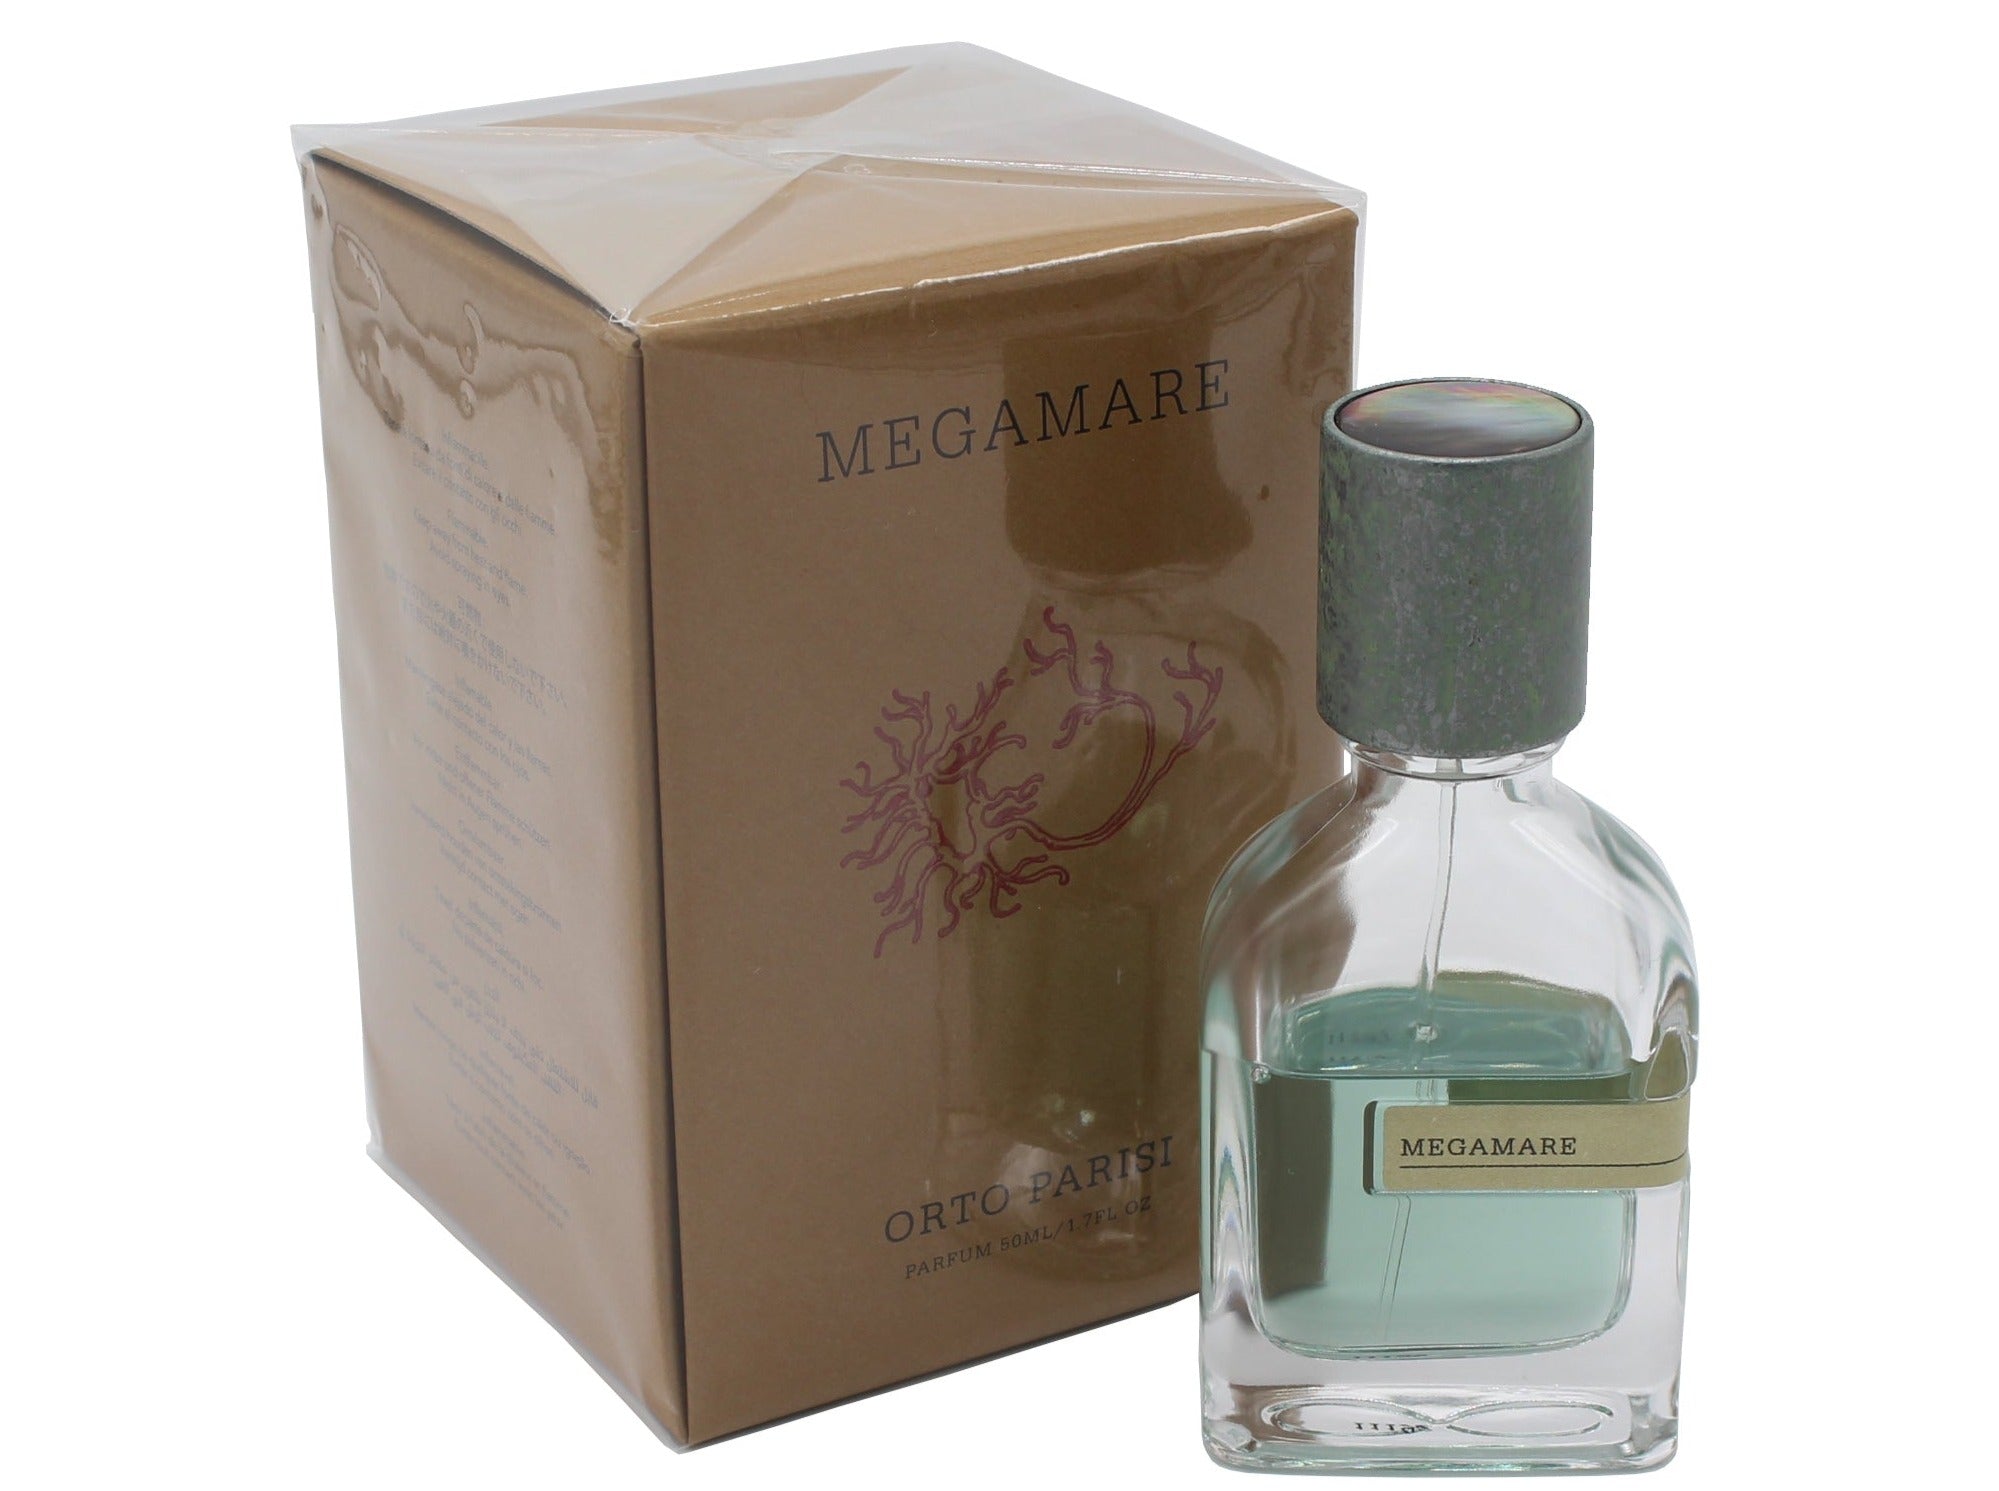 Megamare perfume